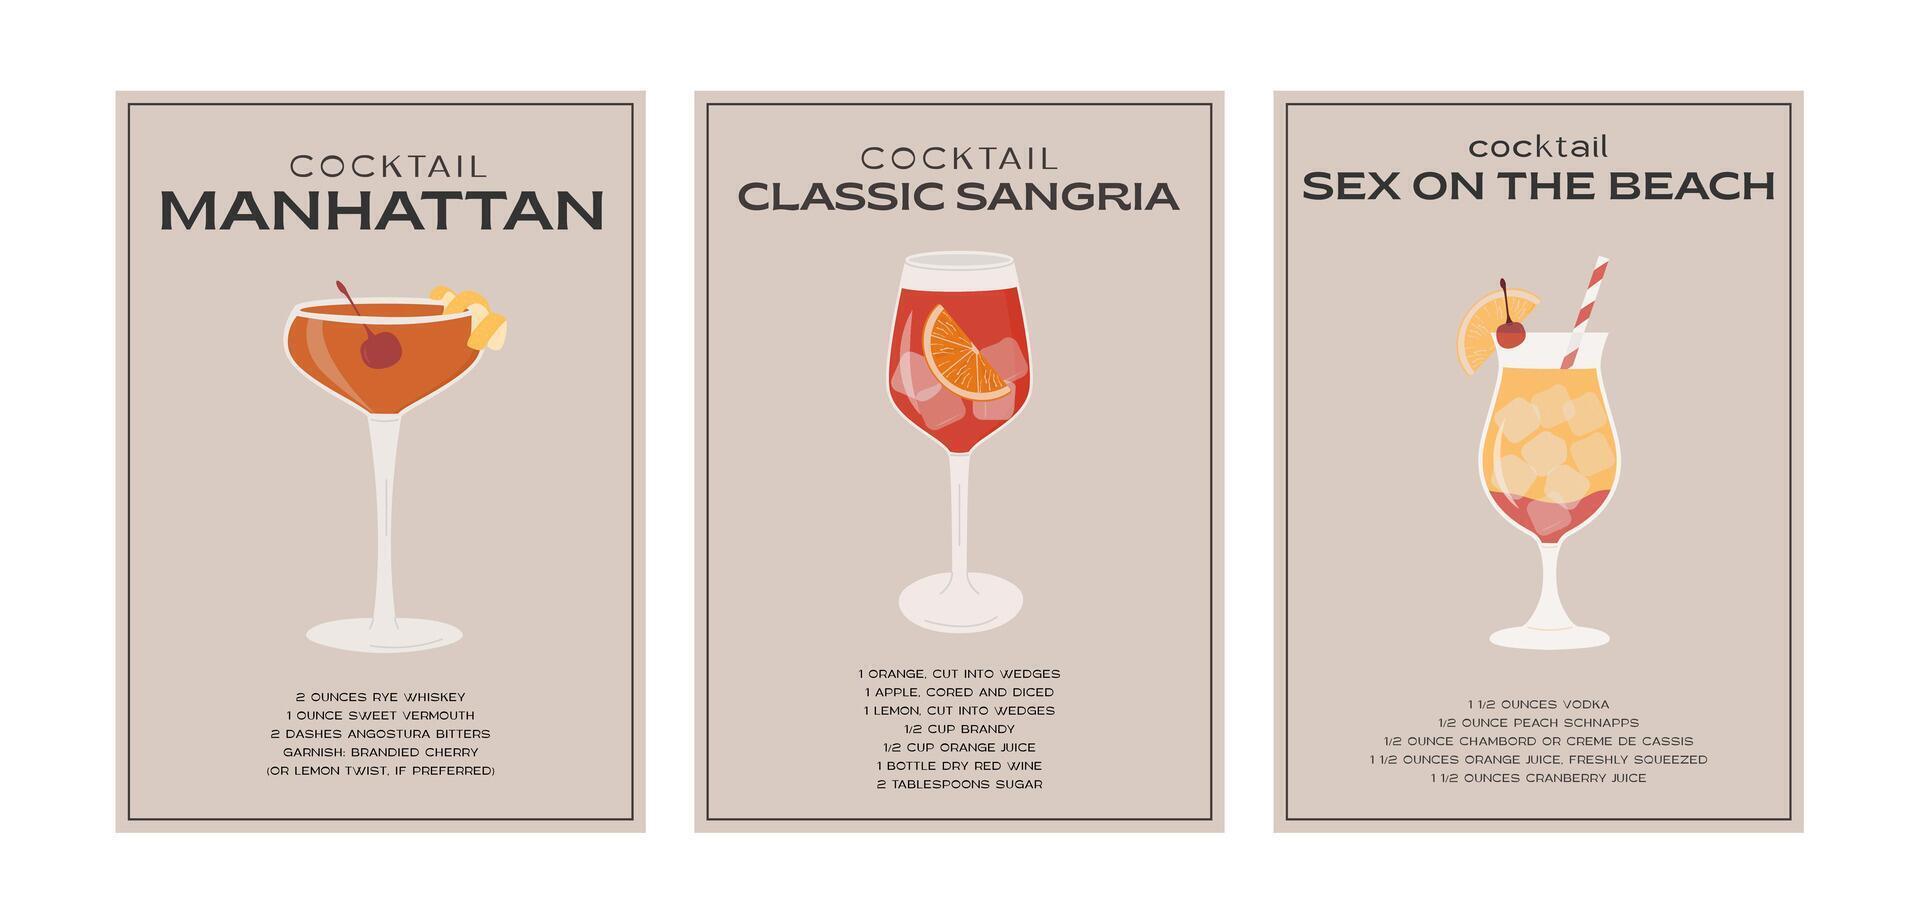 sangria, seks Aan de strand en Manhattan cocktail. klassiek alcohol drank recept met ingrediënten. modern modieus grafisch afdrukken. minimalistische gemakkelijk poster reeks met gegarneerd drankje. vector illustratie.